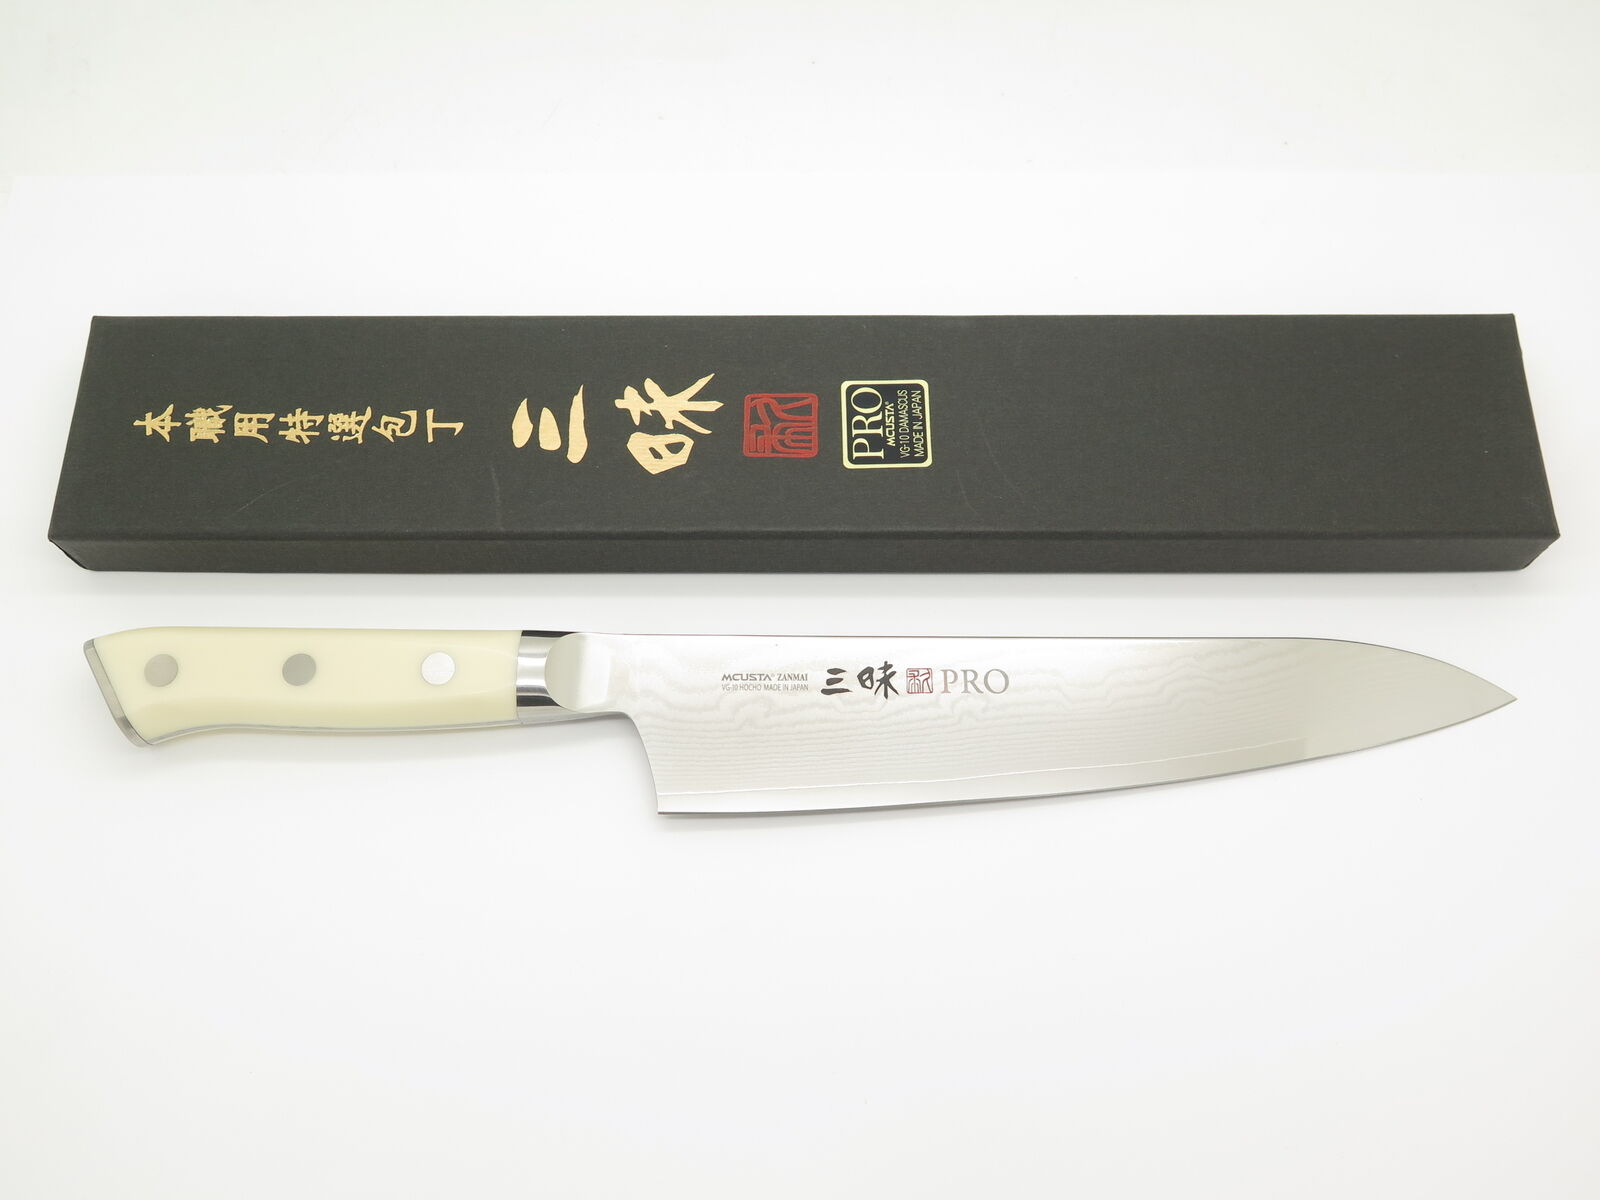 Mcusta Zanmai HK-3005D-A Seki Japan 210mm Japanese Damascus Kitchen Chef Knife